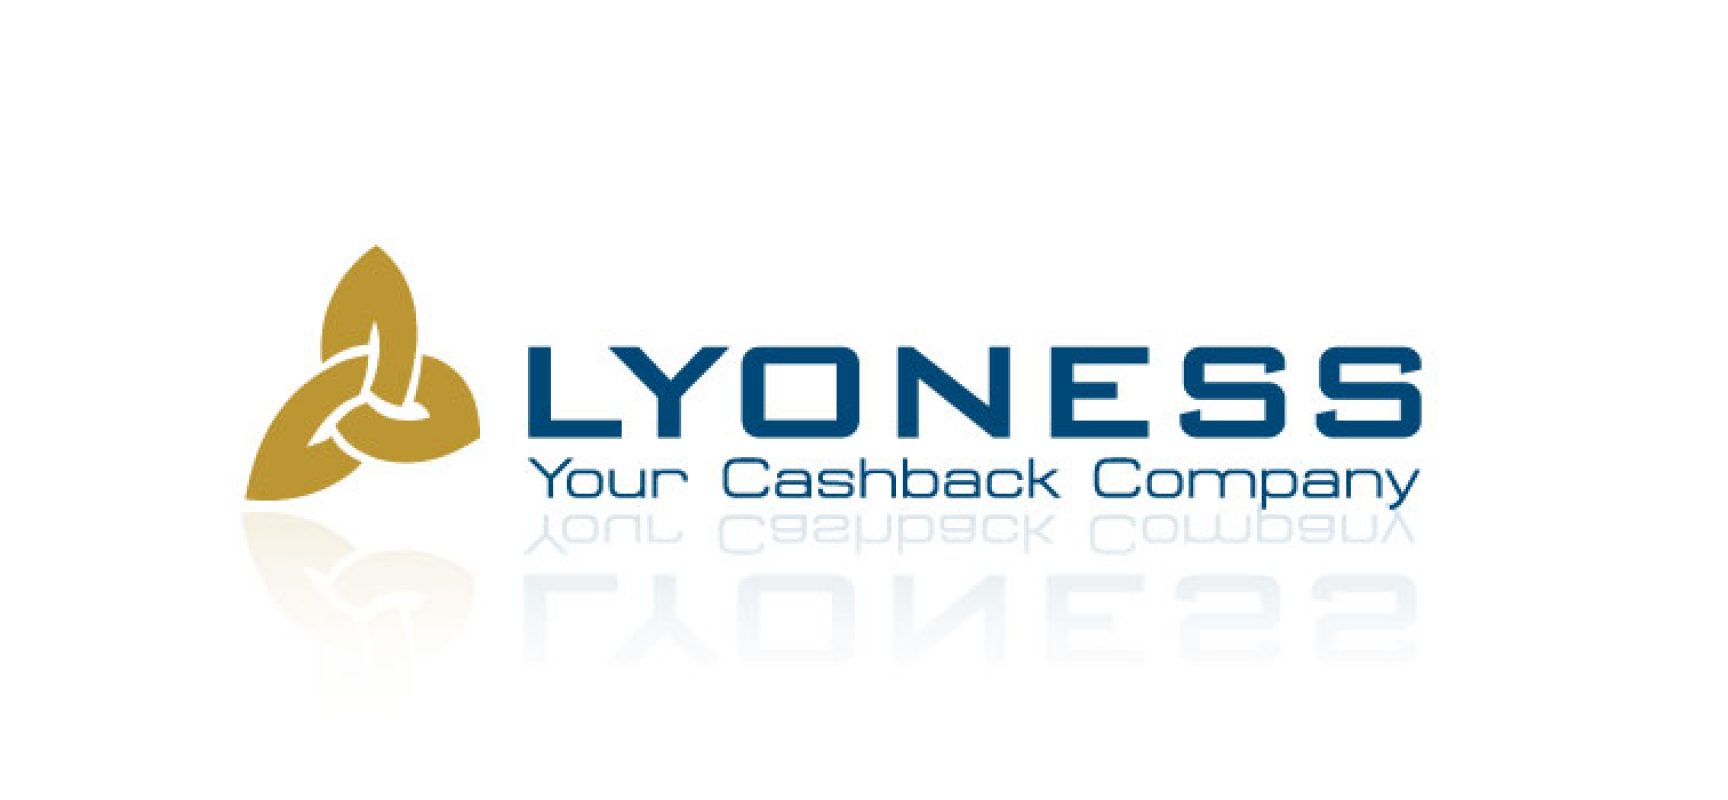 Lyoness replica a consumatori, “Non è schema piramidale, faremo ricorso”